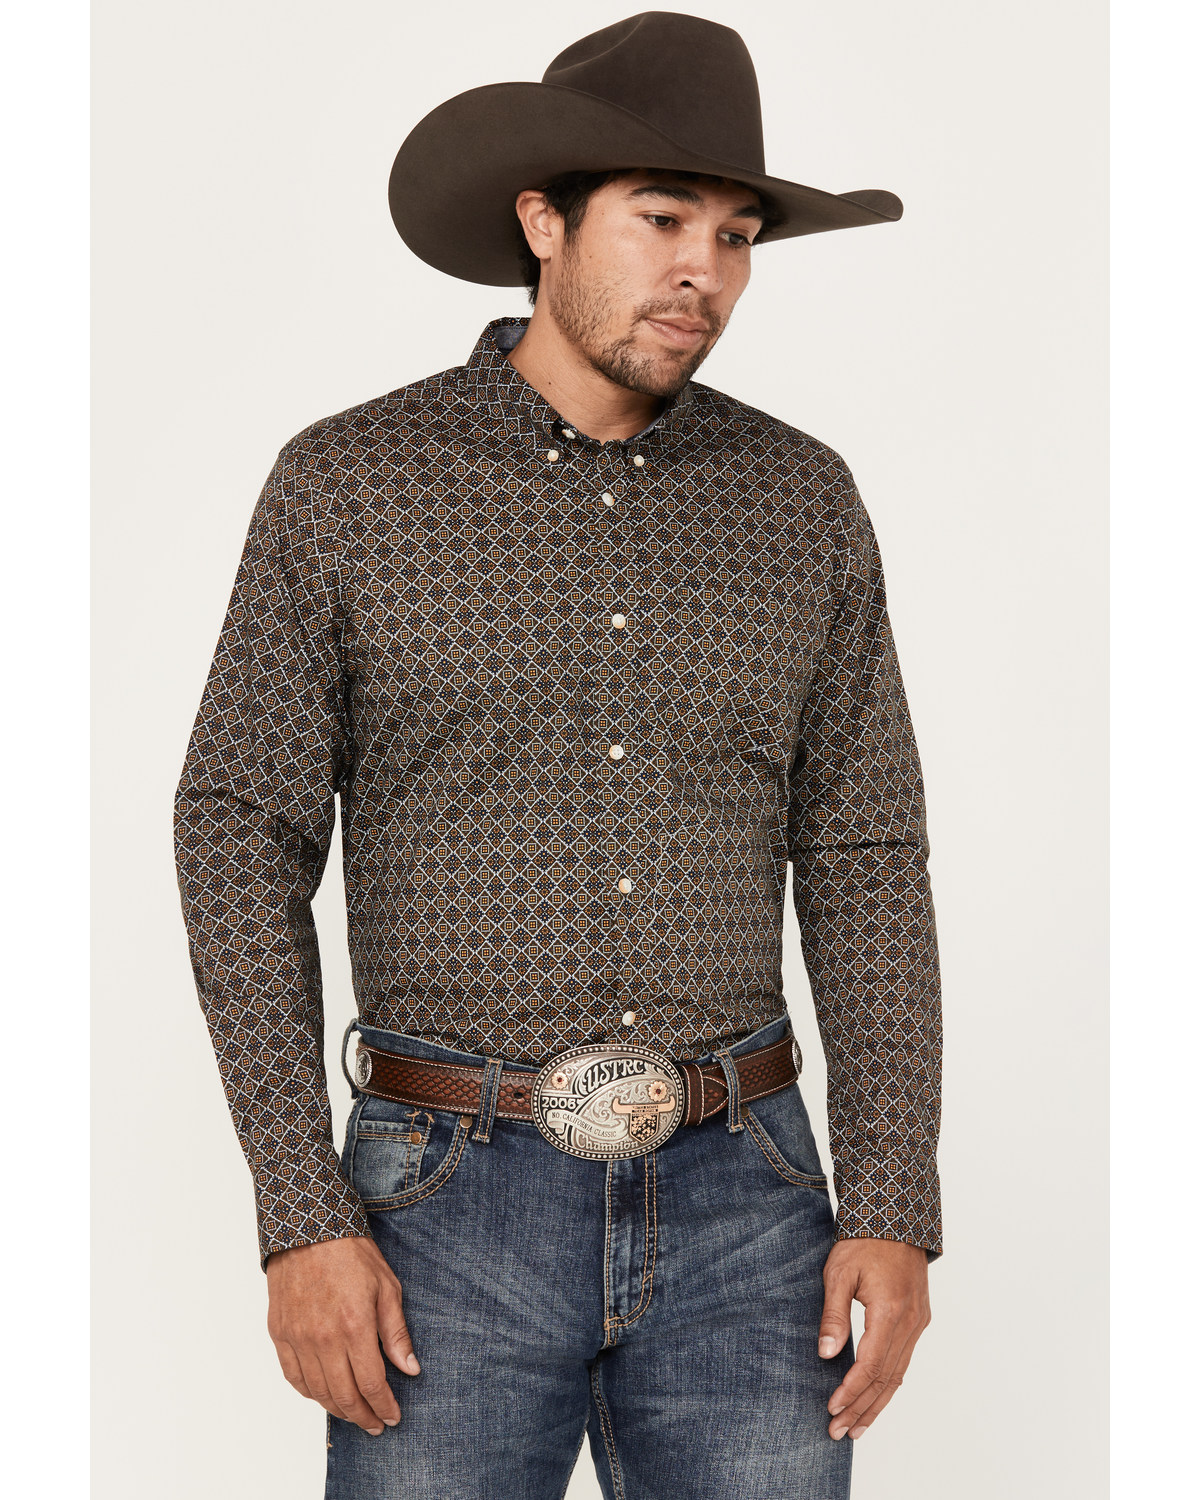 Cody James Men's Money Maker Print Long Sleeve Button-Down Western Shirt